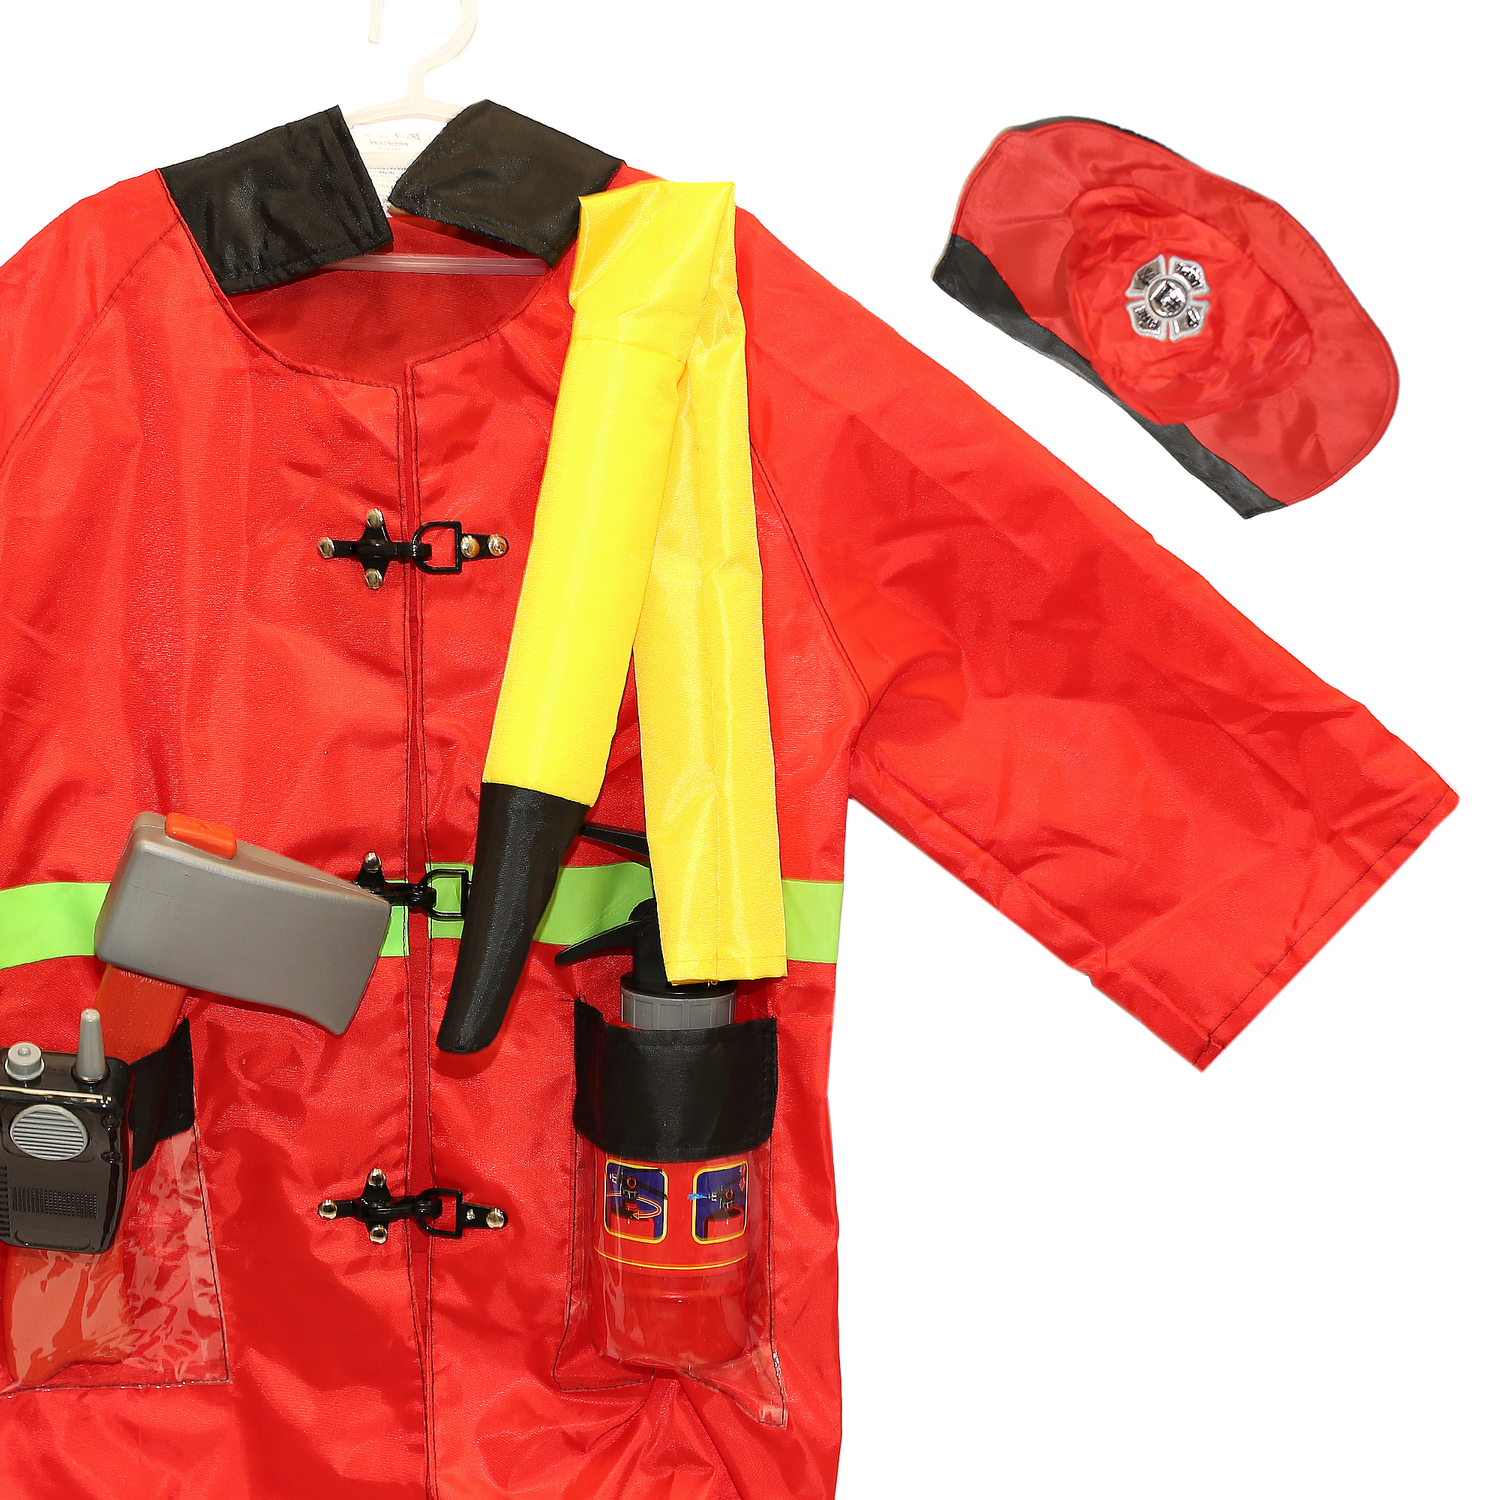 Игровой костюм Пожарный SHARKTOYS карнавальный костюм с аксессуарами от 3 до 8 лет 1000000070 - фото 2